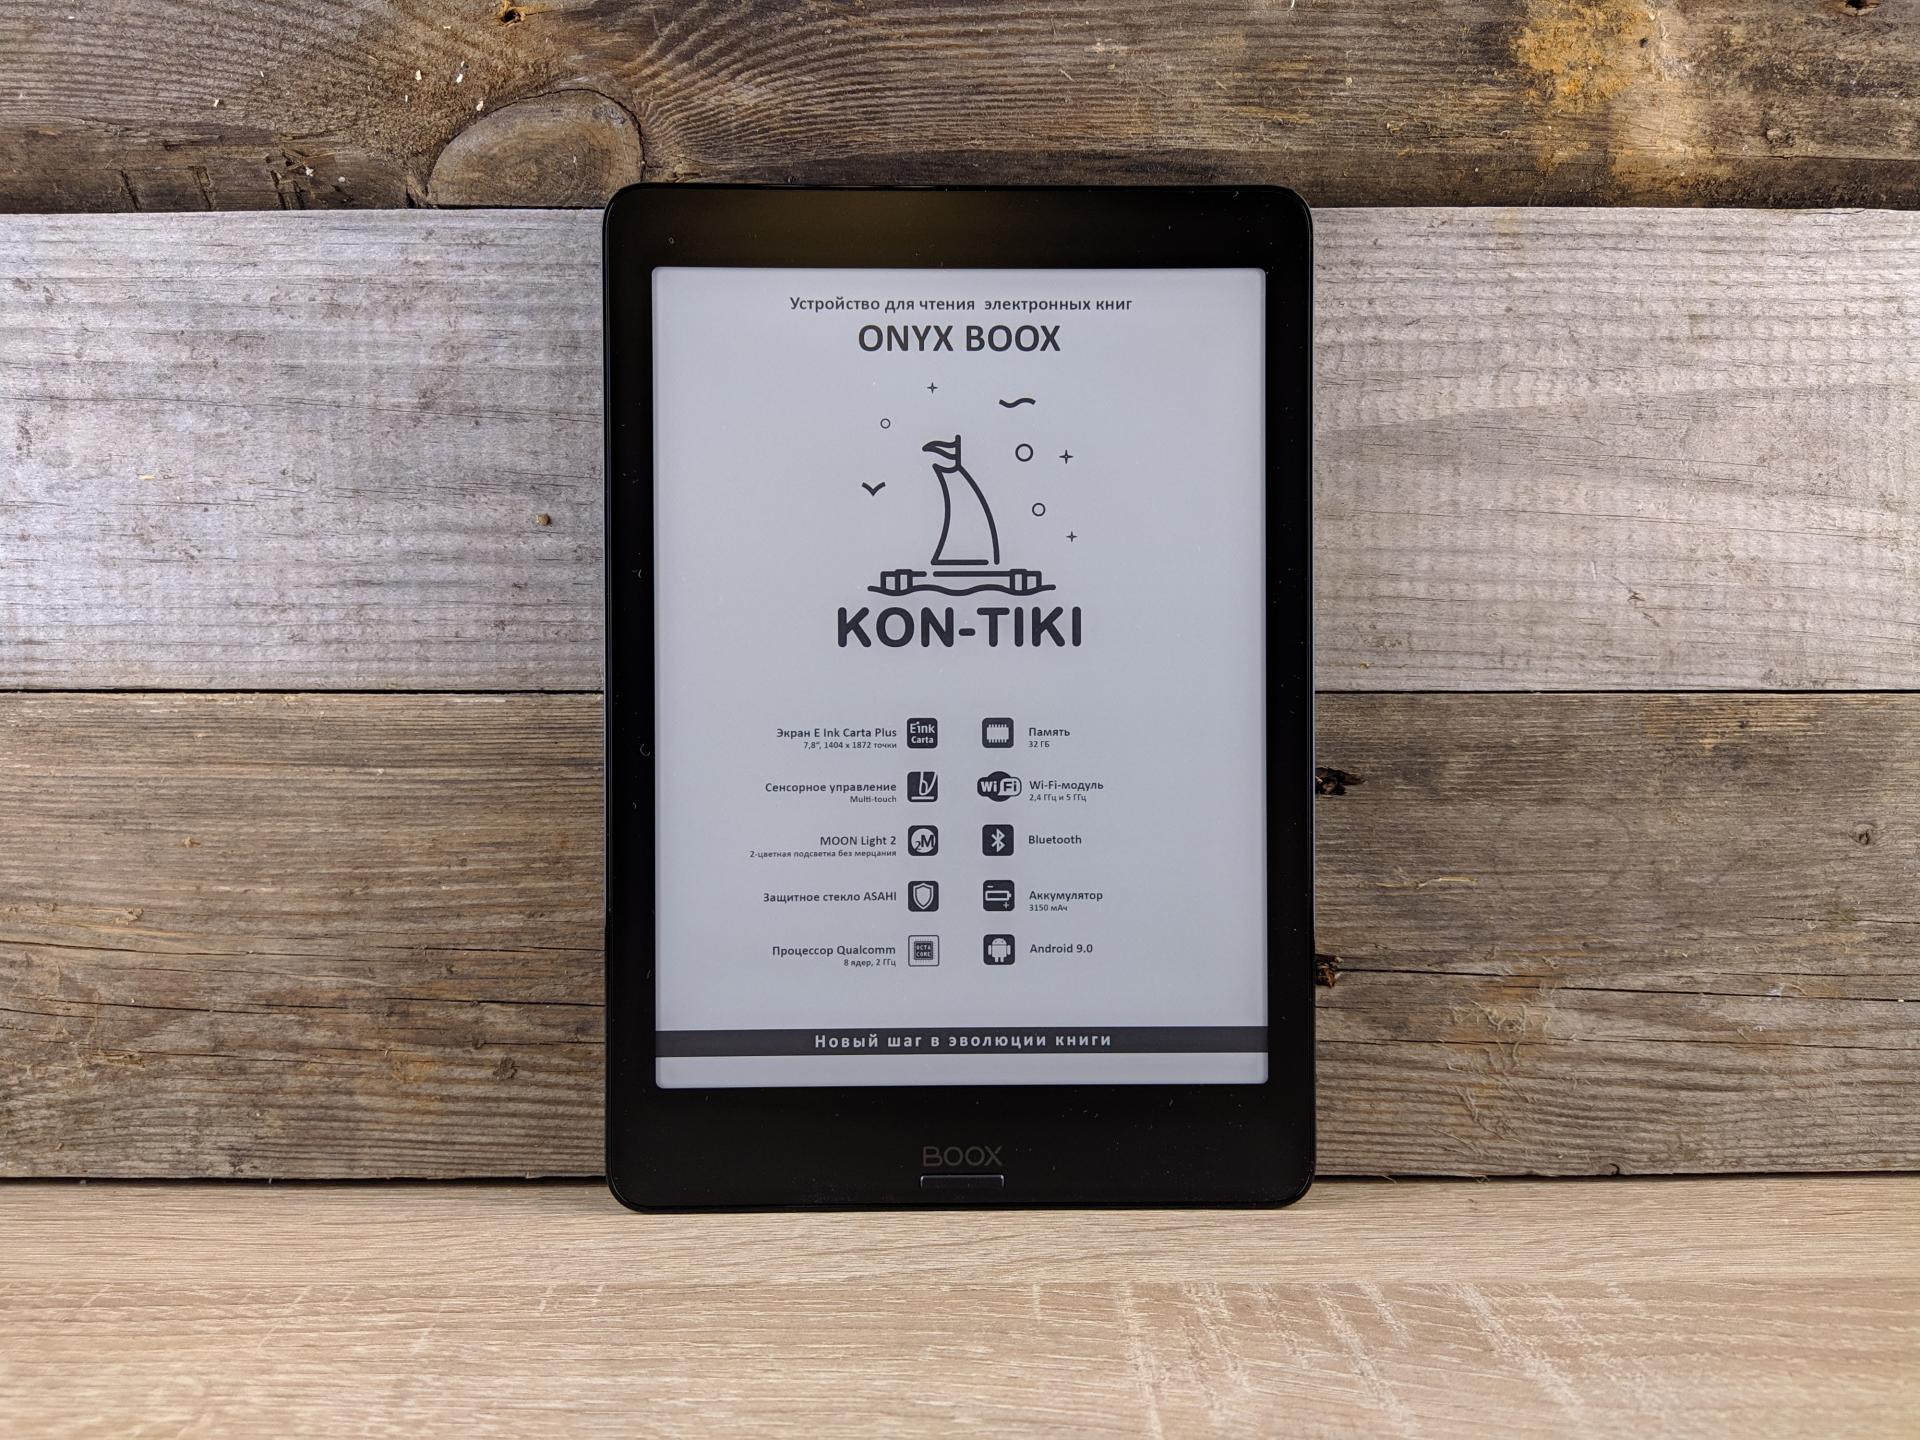 Тест-драйв электронной книги ONYX BOOX Kon-Tiki